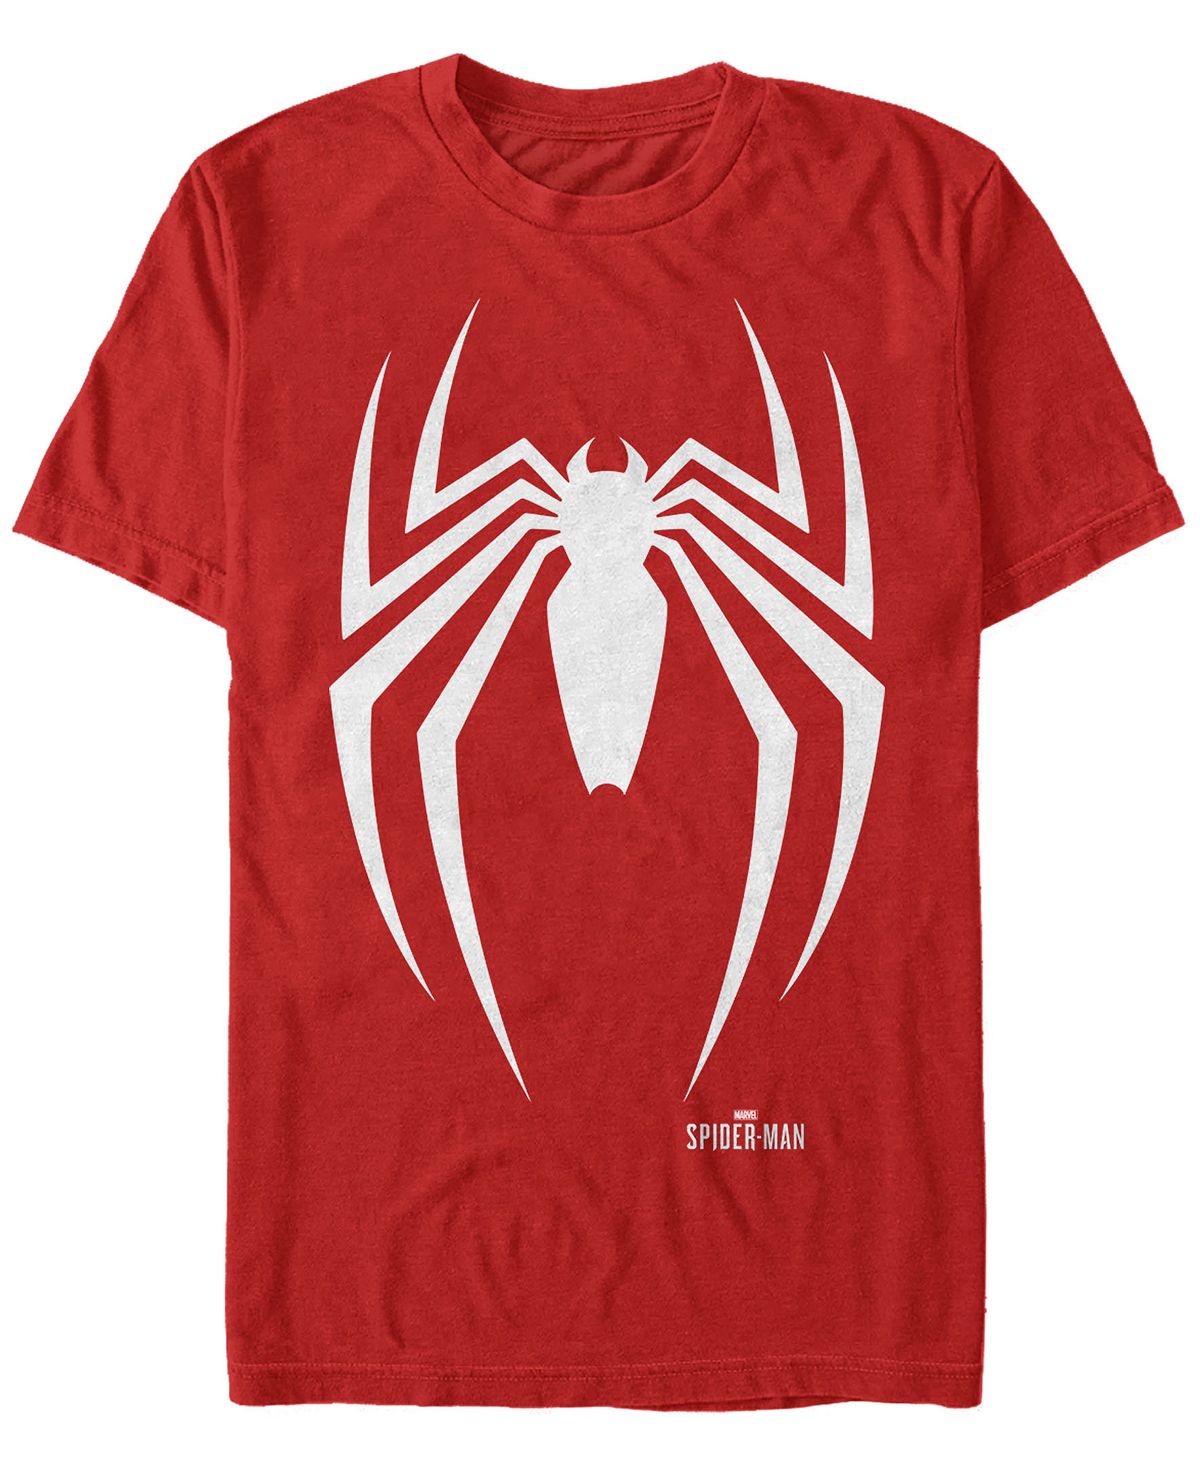 Мужская футболка с коротким рукавом с логотипом marvel spider-man gamerverse spider-man Fifth Sun, красный футболка с коротким рукавом для мальчика spider man графитовая